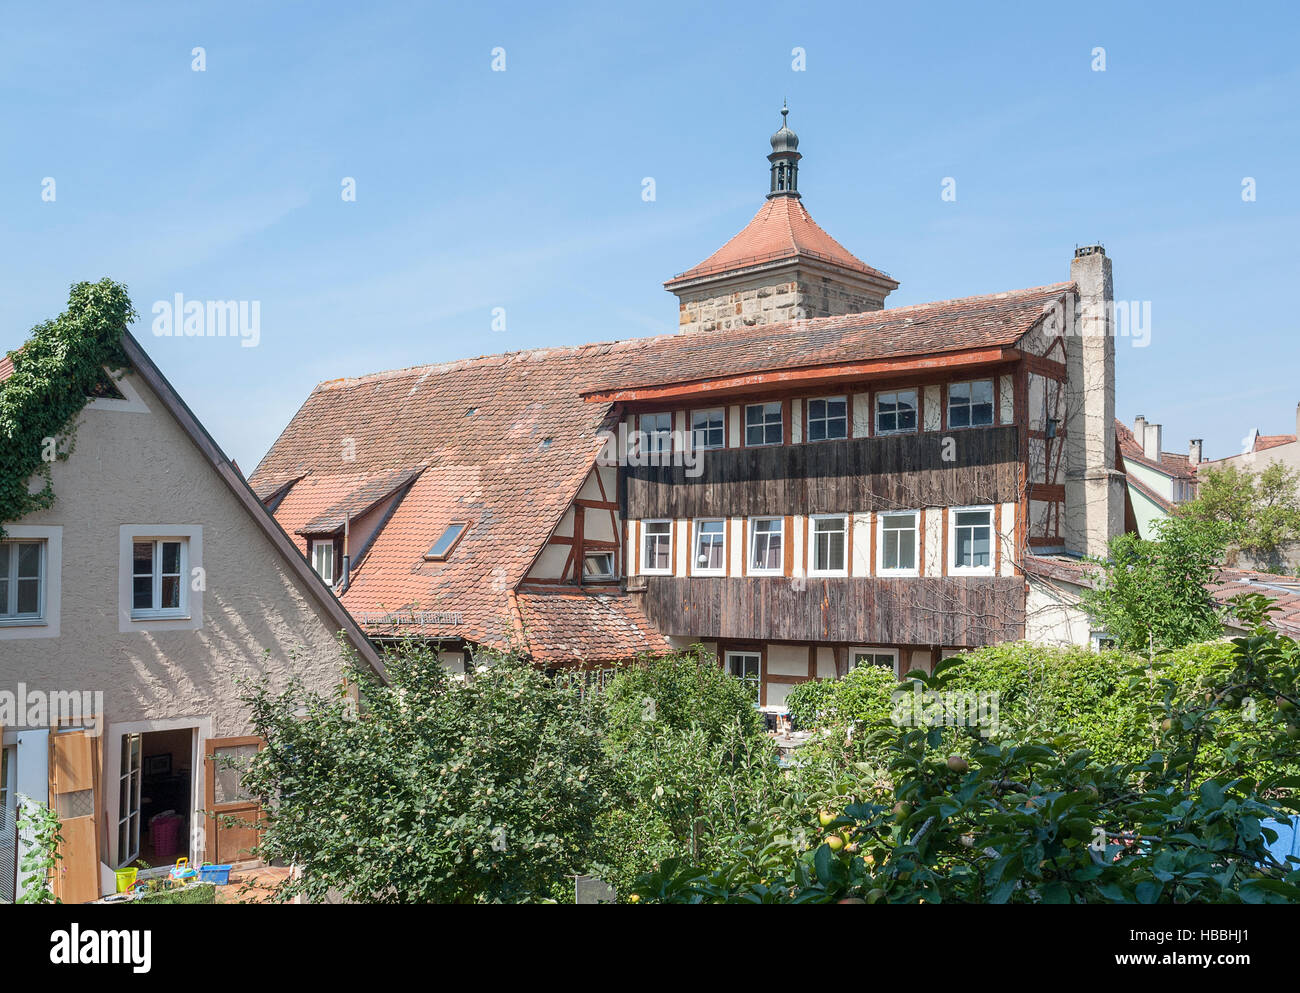 Stadtansicht von Rothenburg Ob der Tauber, einer Stadt in Mittelfranken in Bayern, Deutschland Stockfoto